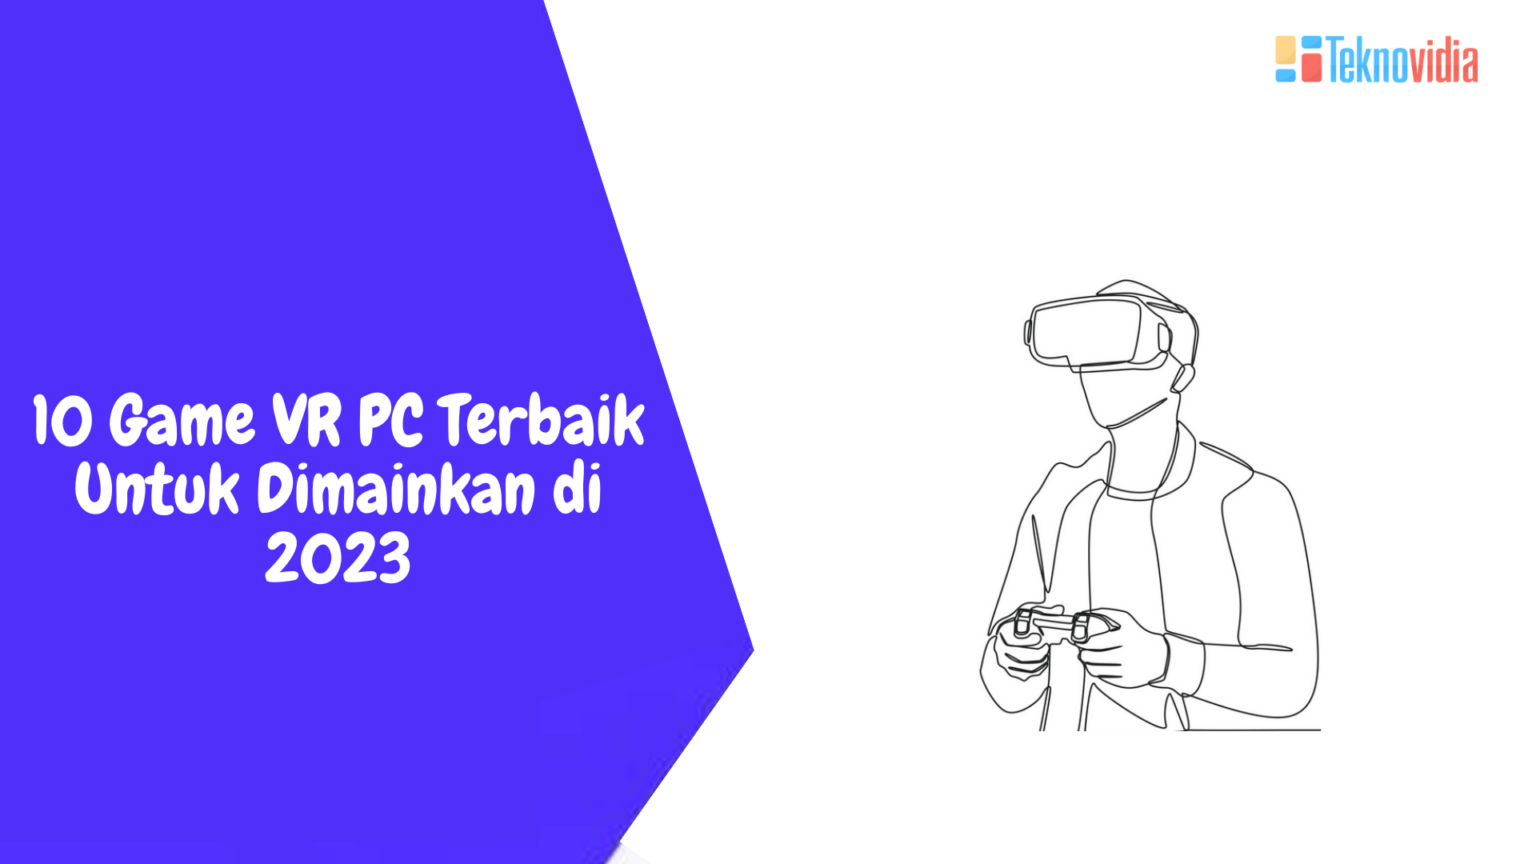 10 Game VR PC Terbaik Untuk Dimainkan di 2023